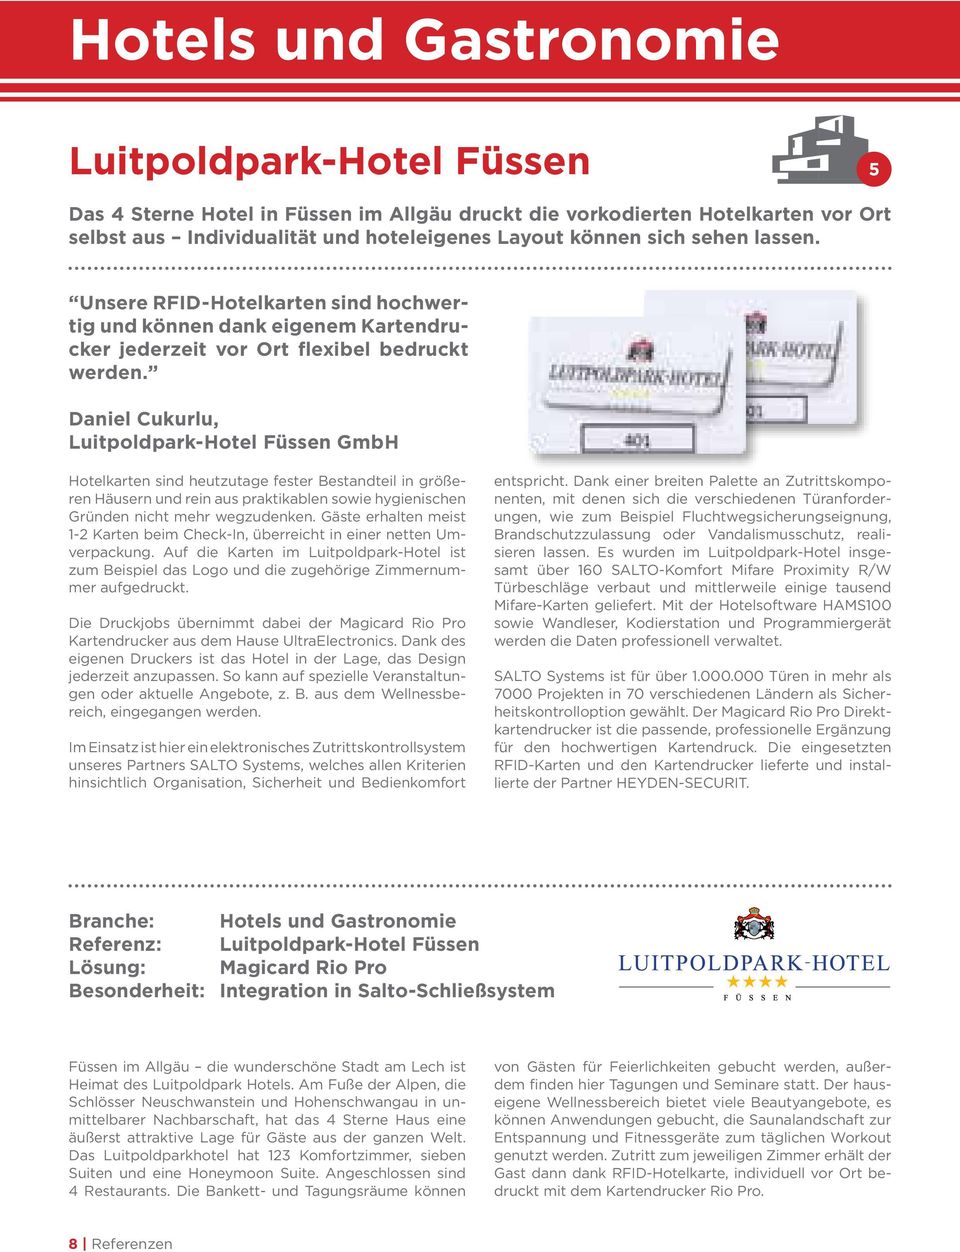 Daniel Cukurlu, Luitpoldpark-Hotel Füssen GmbH Hotelkarten sind heutzutage fester Bestandteil in größeren Häusern und rein aus praktikablen sowie hygie nischen Gründen nicht mehr wegzudenken.